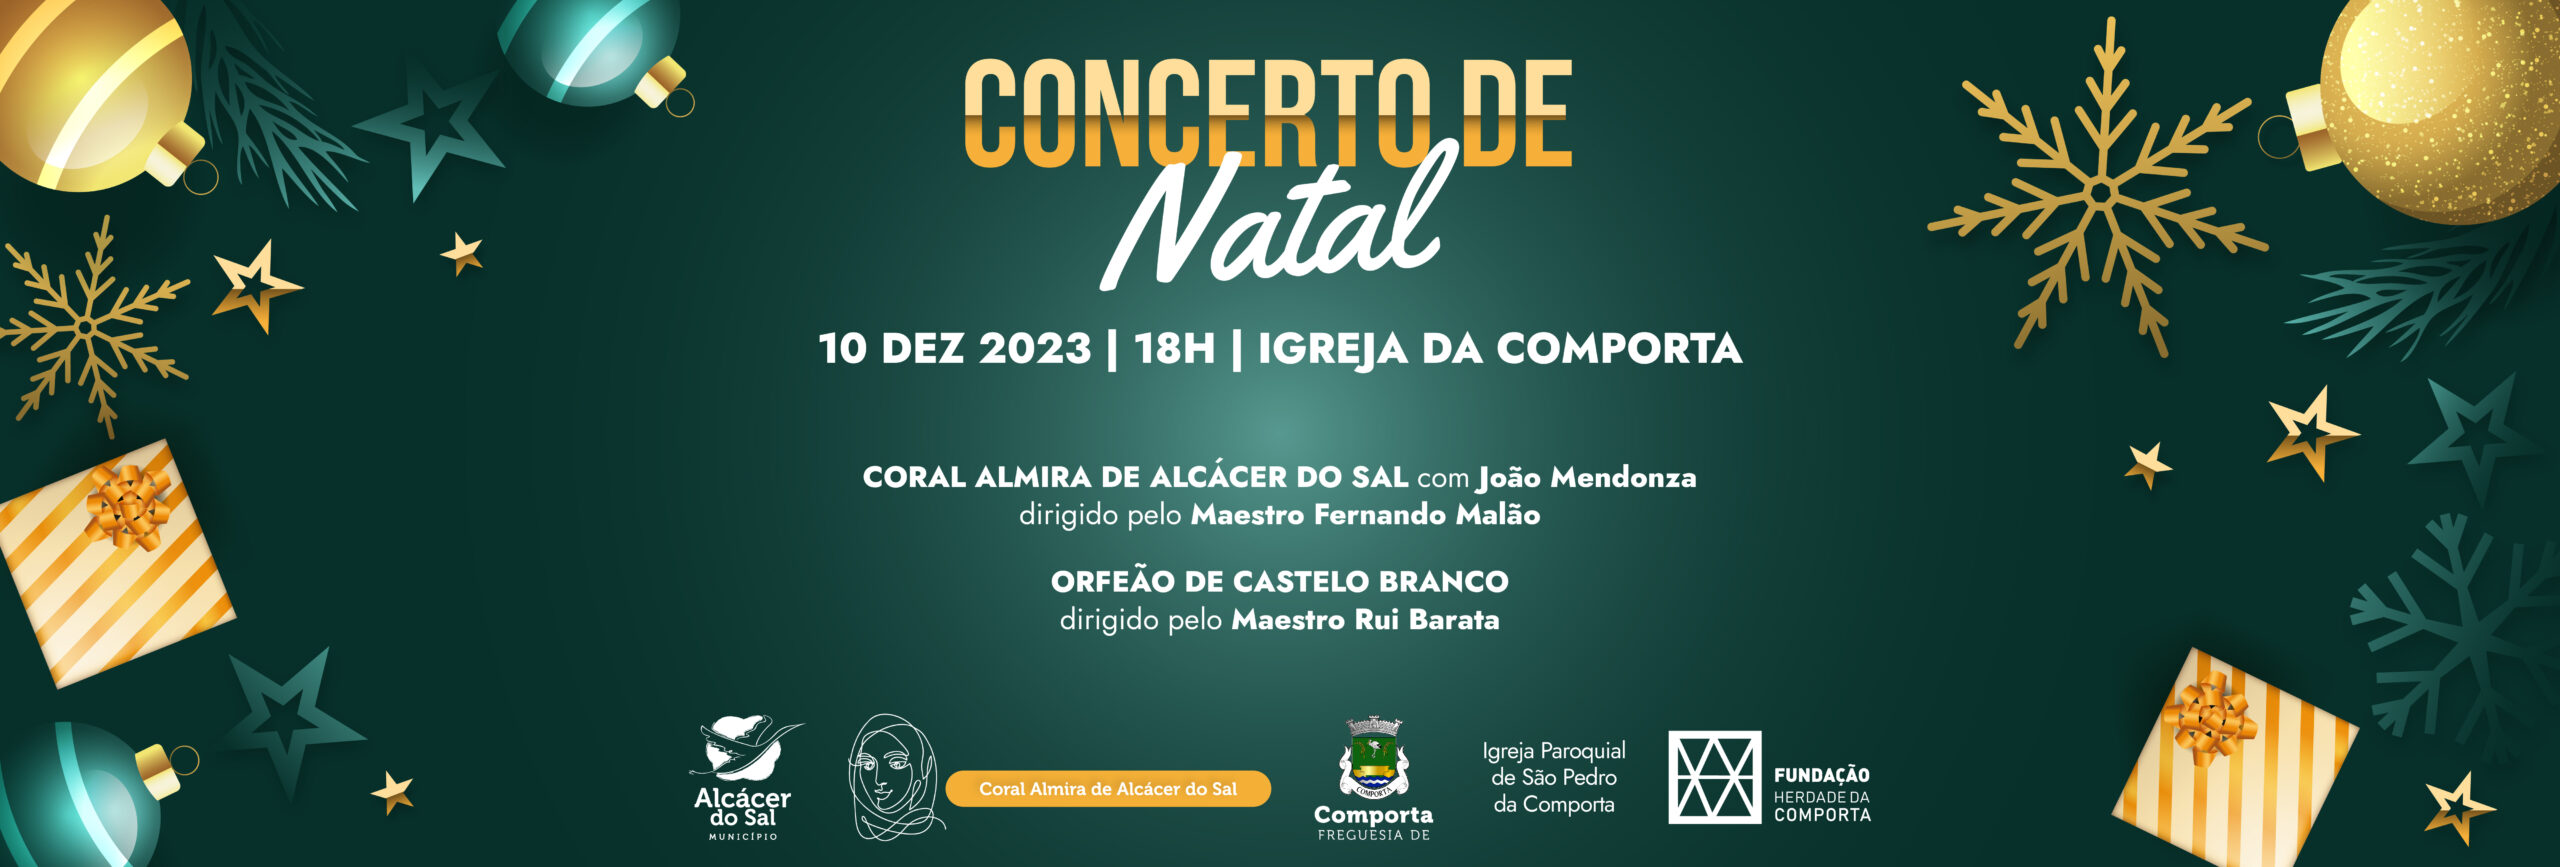 Imagem SITE_Concerto de Natal Comporta